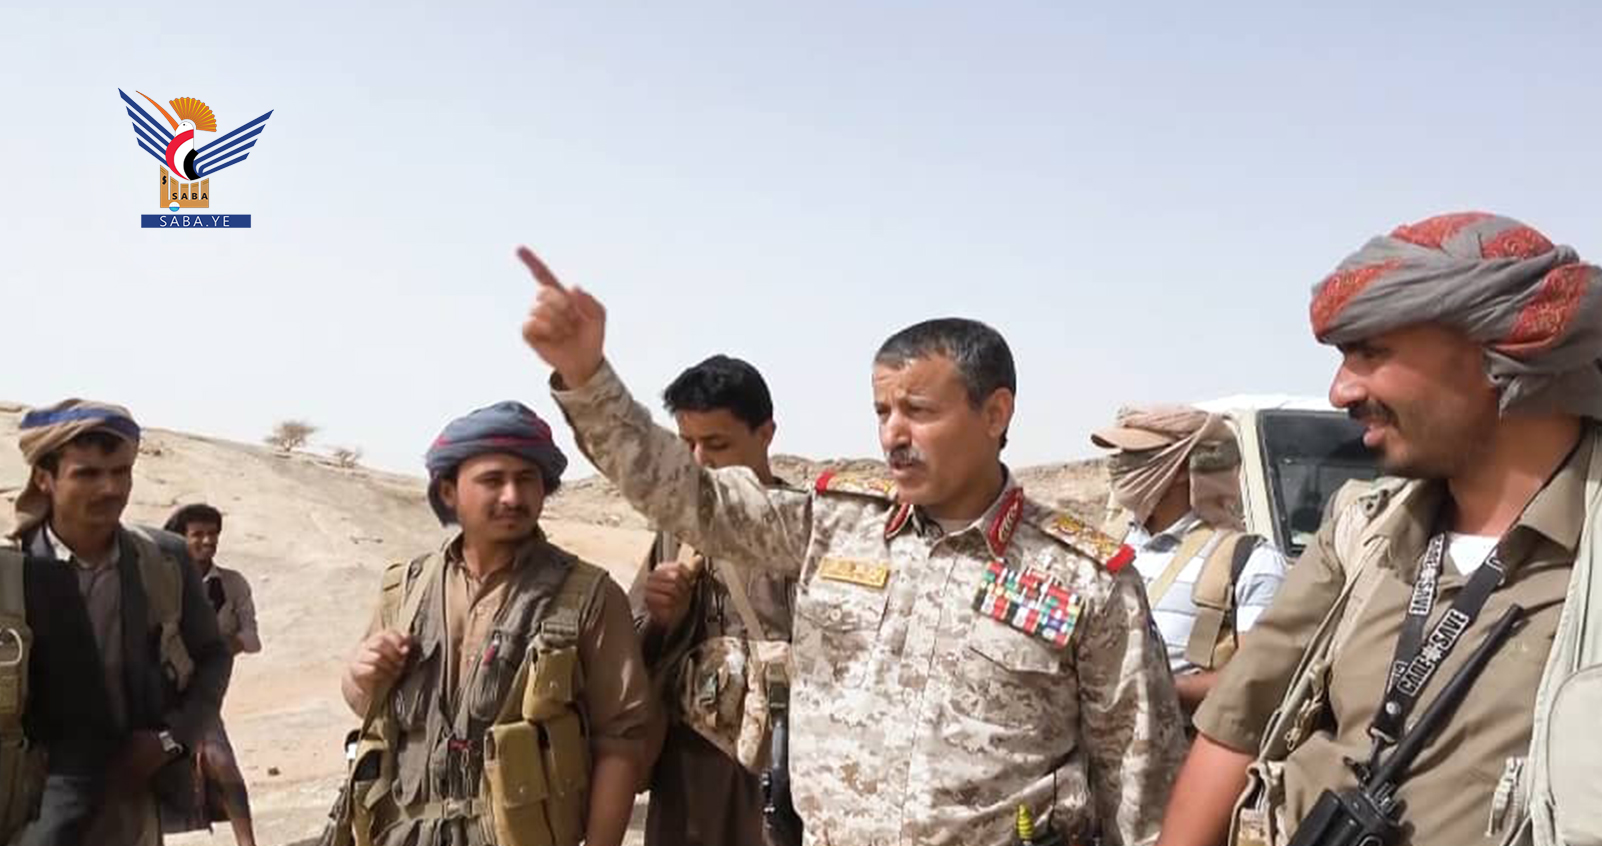 تصريح هام للوزير الدفاع اليمني بخصوص وقف الحرب في اليمن ...